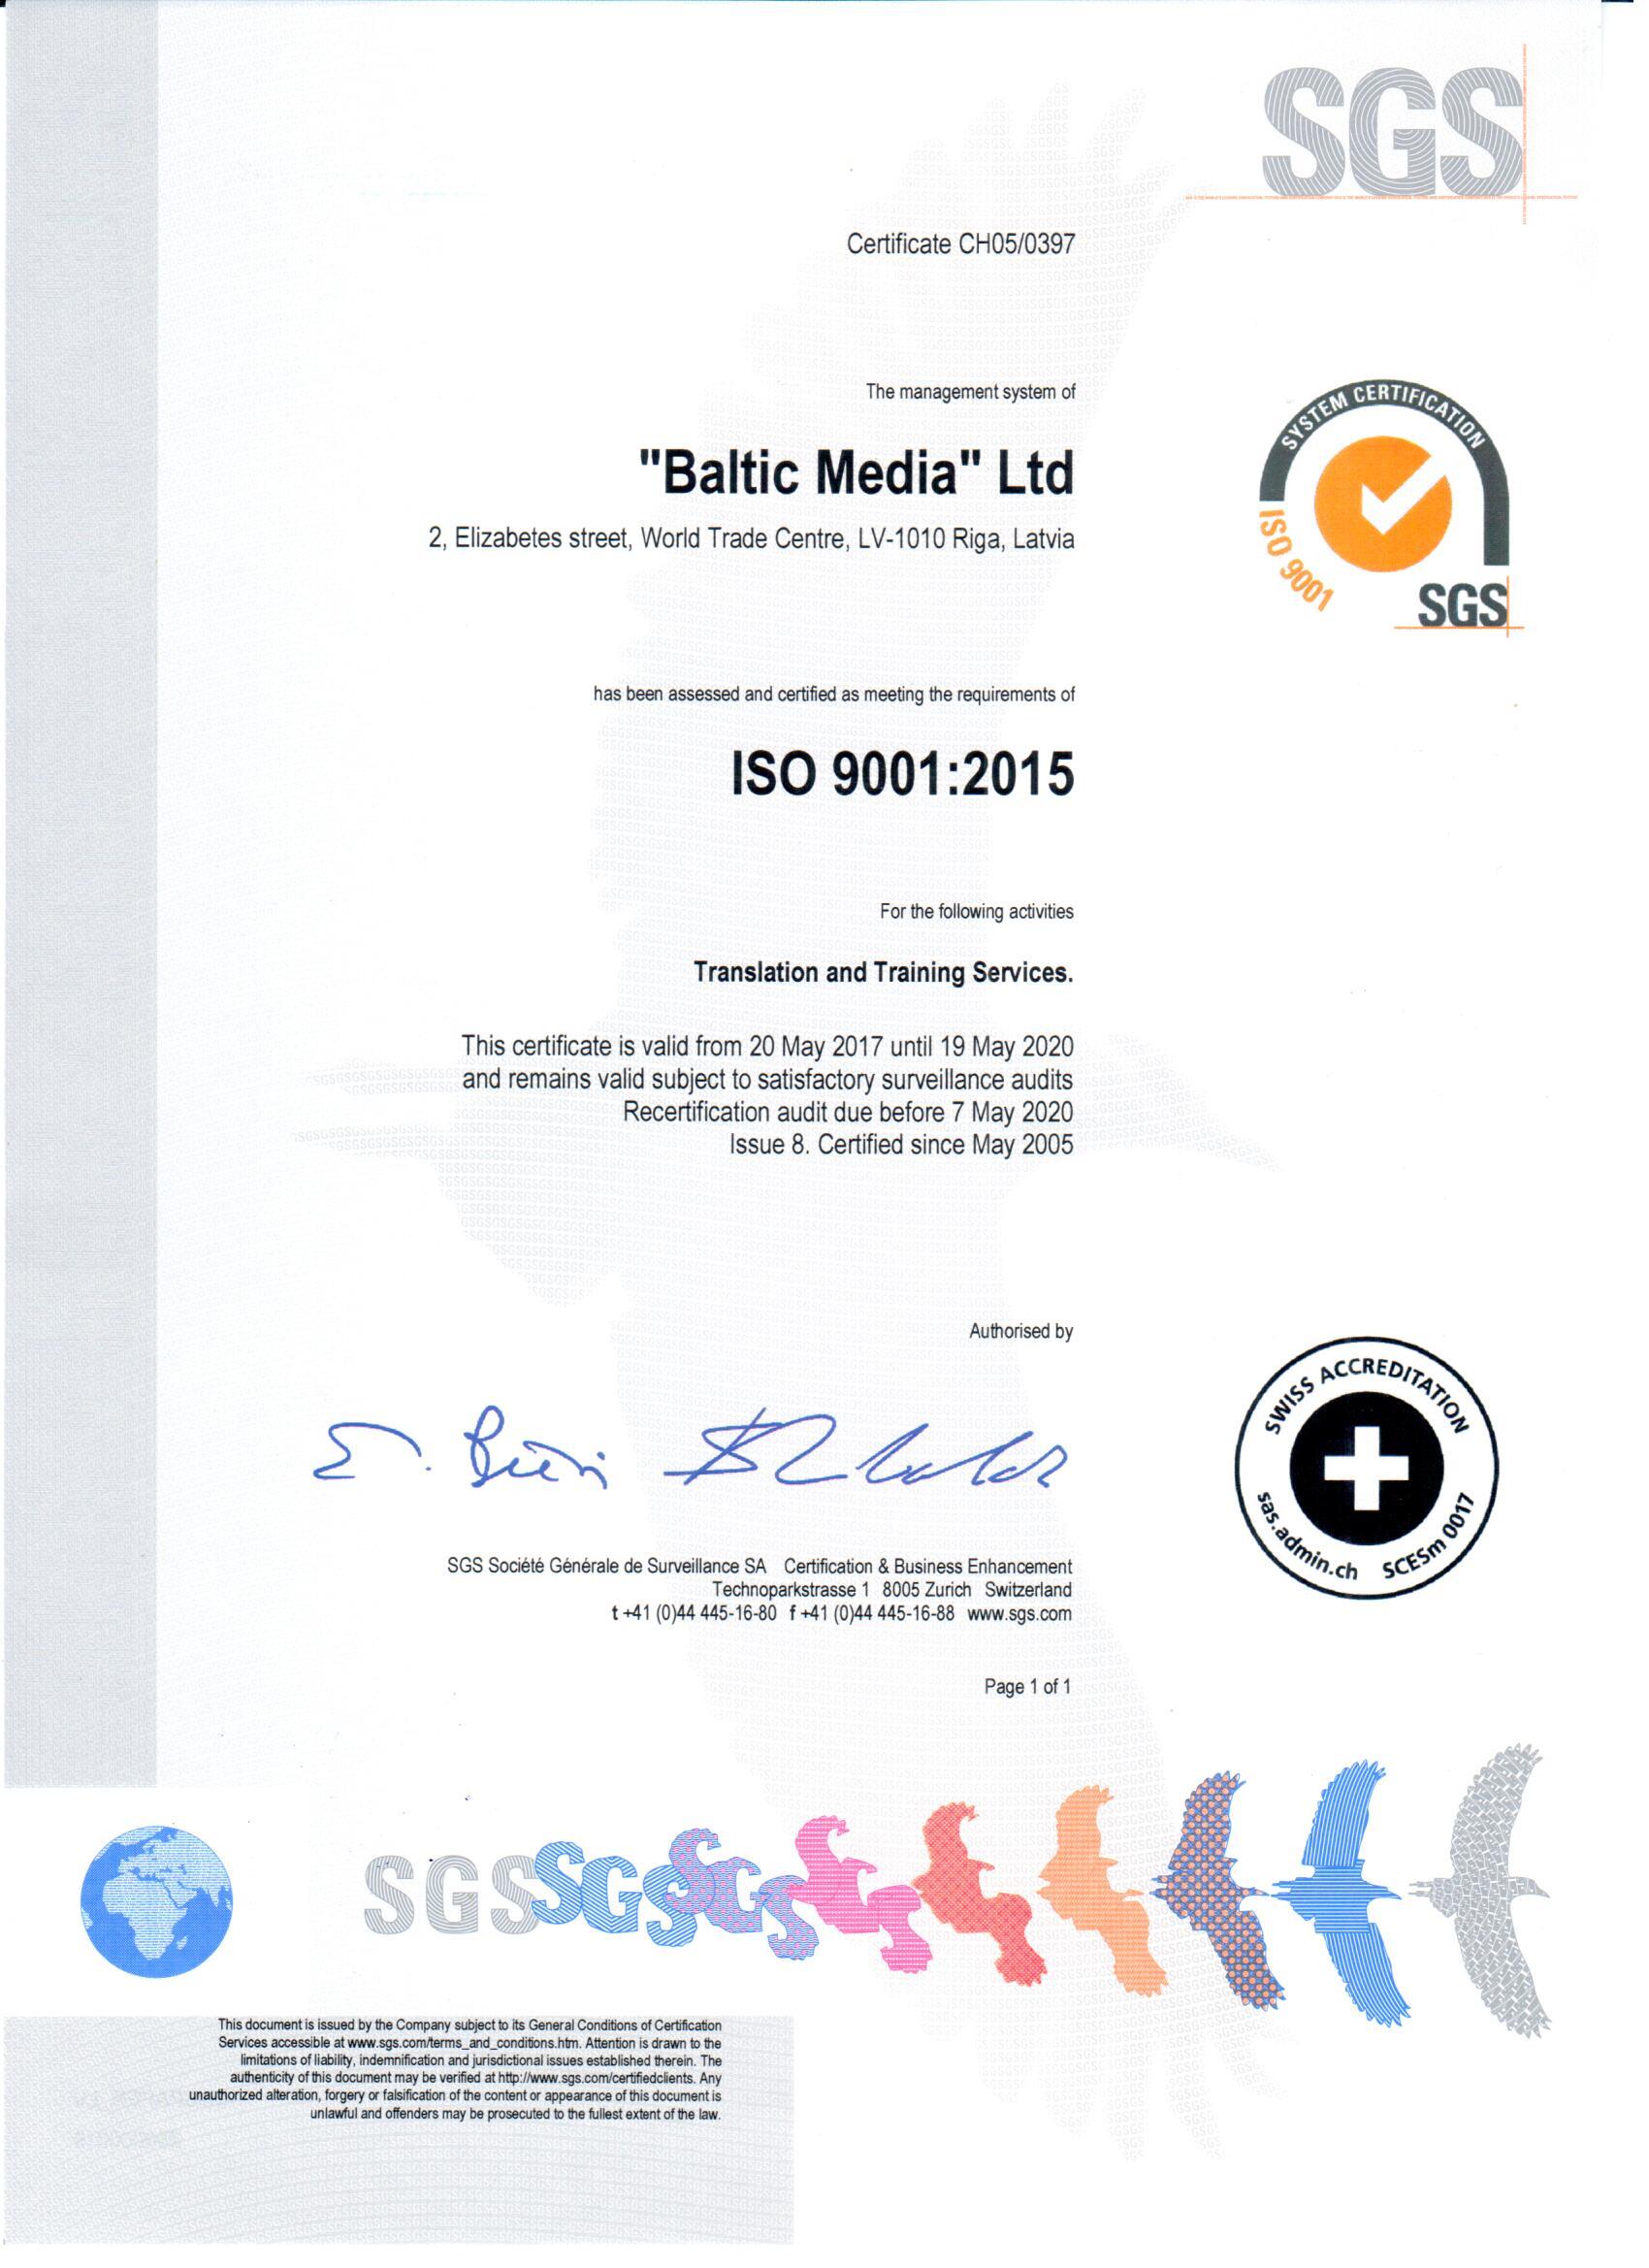 Скандинаво-балтийская компания по языковым курсам Baltic Media Ltd. действует согласно требованиям системы менеджмента качества международного стандарта ISO 9001:2015. 